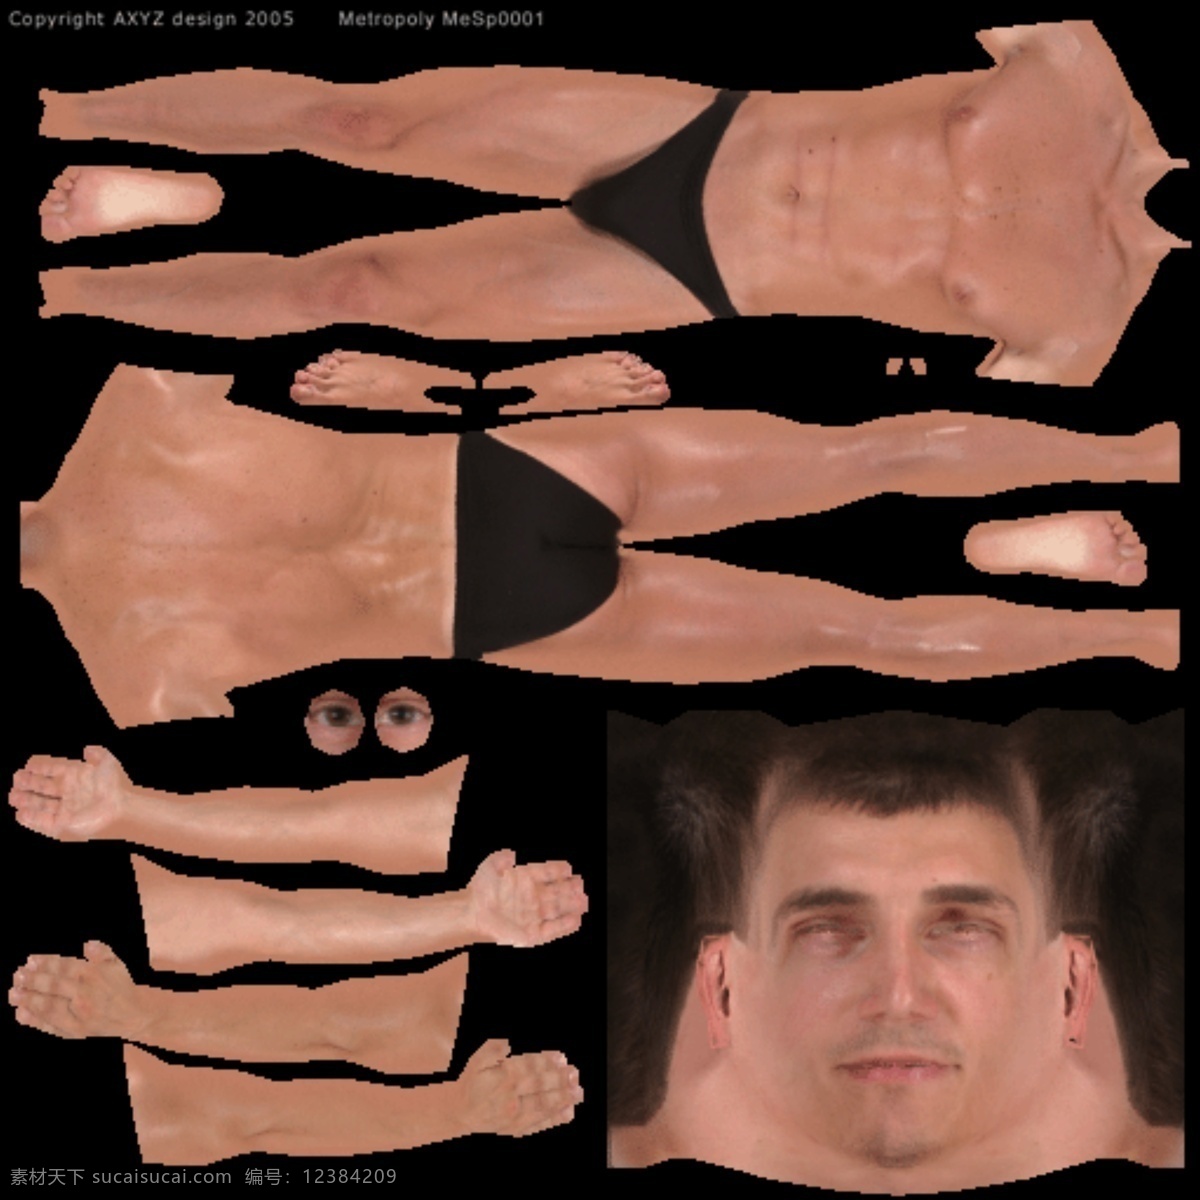 泳装 男士 模特 模型 健美 人体 3d模型素材 其他3d模型